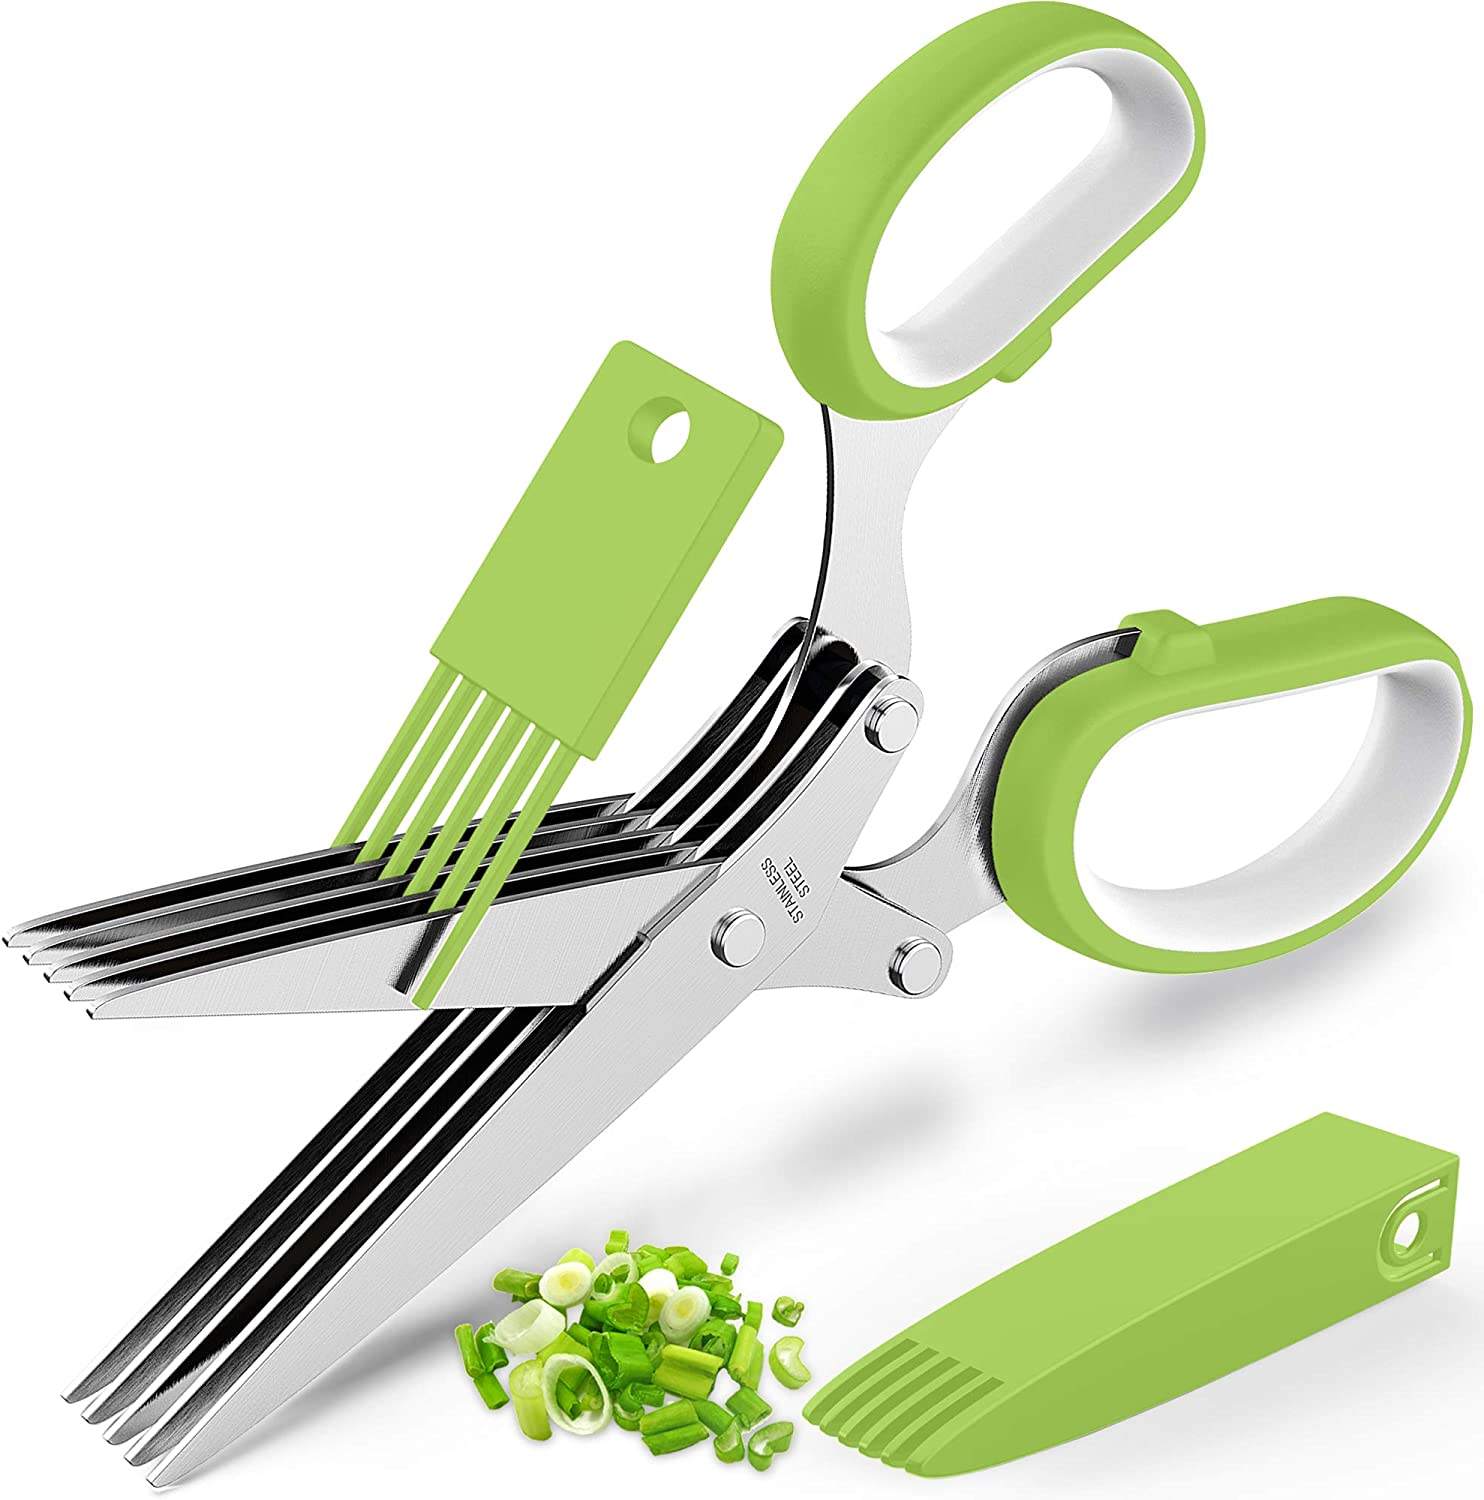 5 Blades Kitchen Scissors